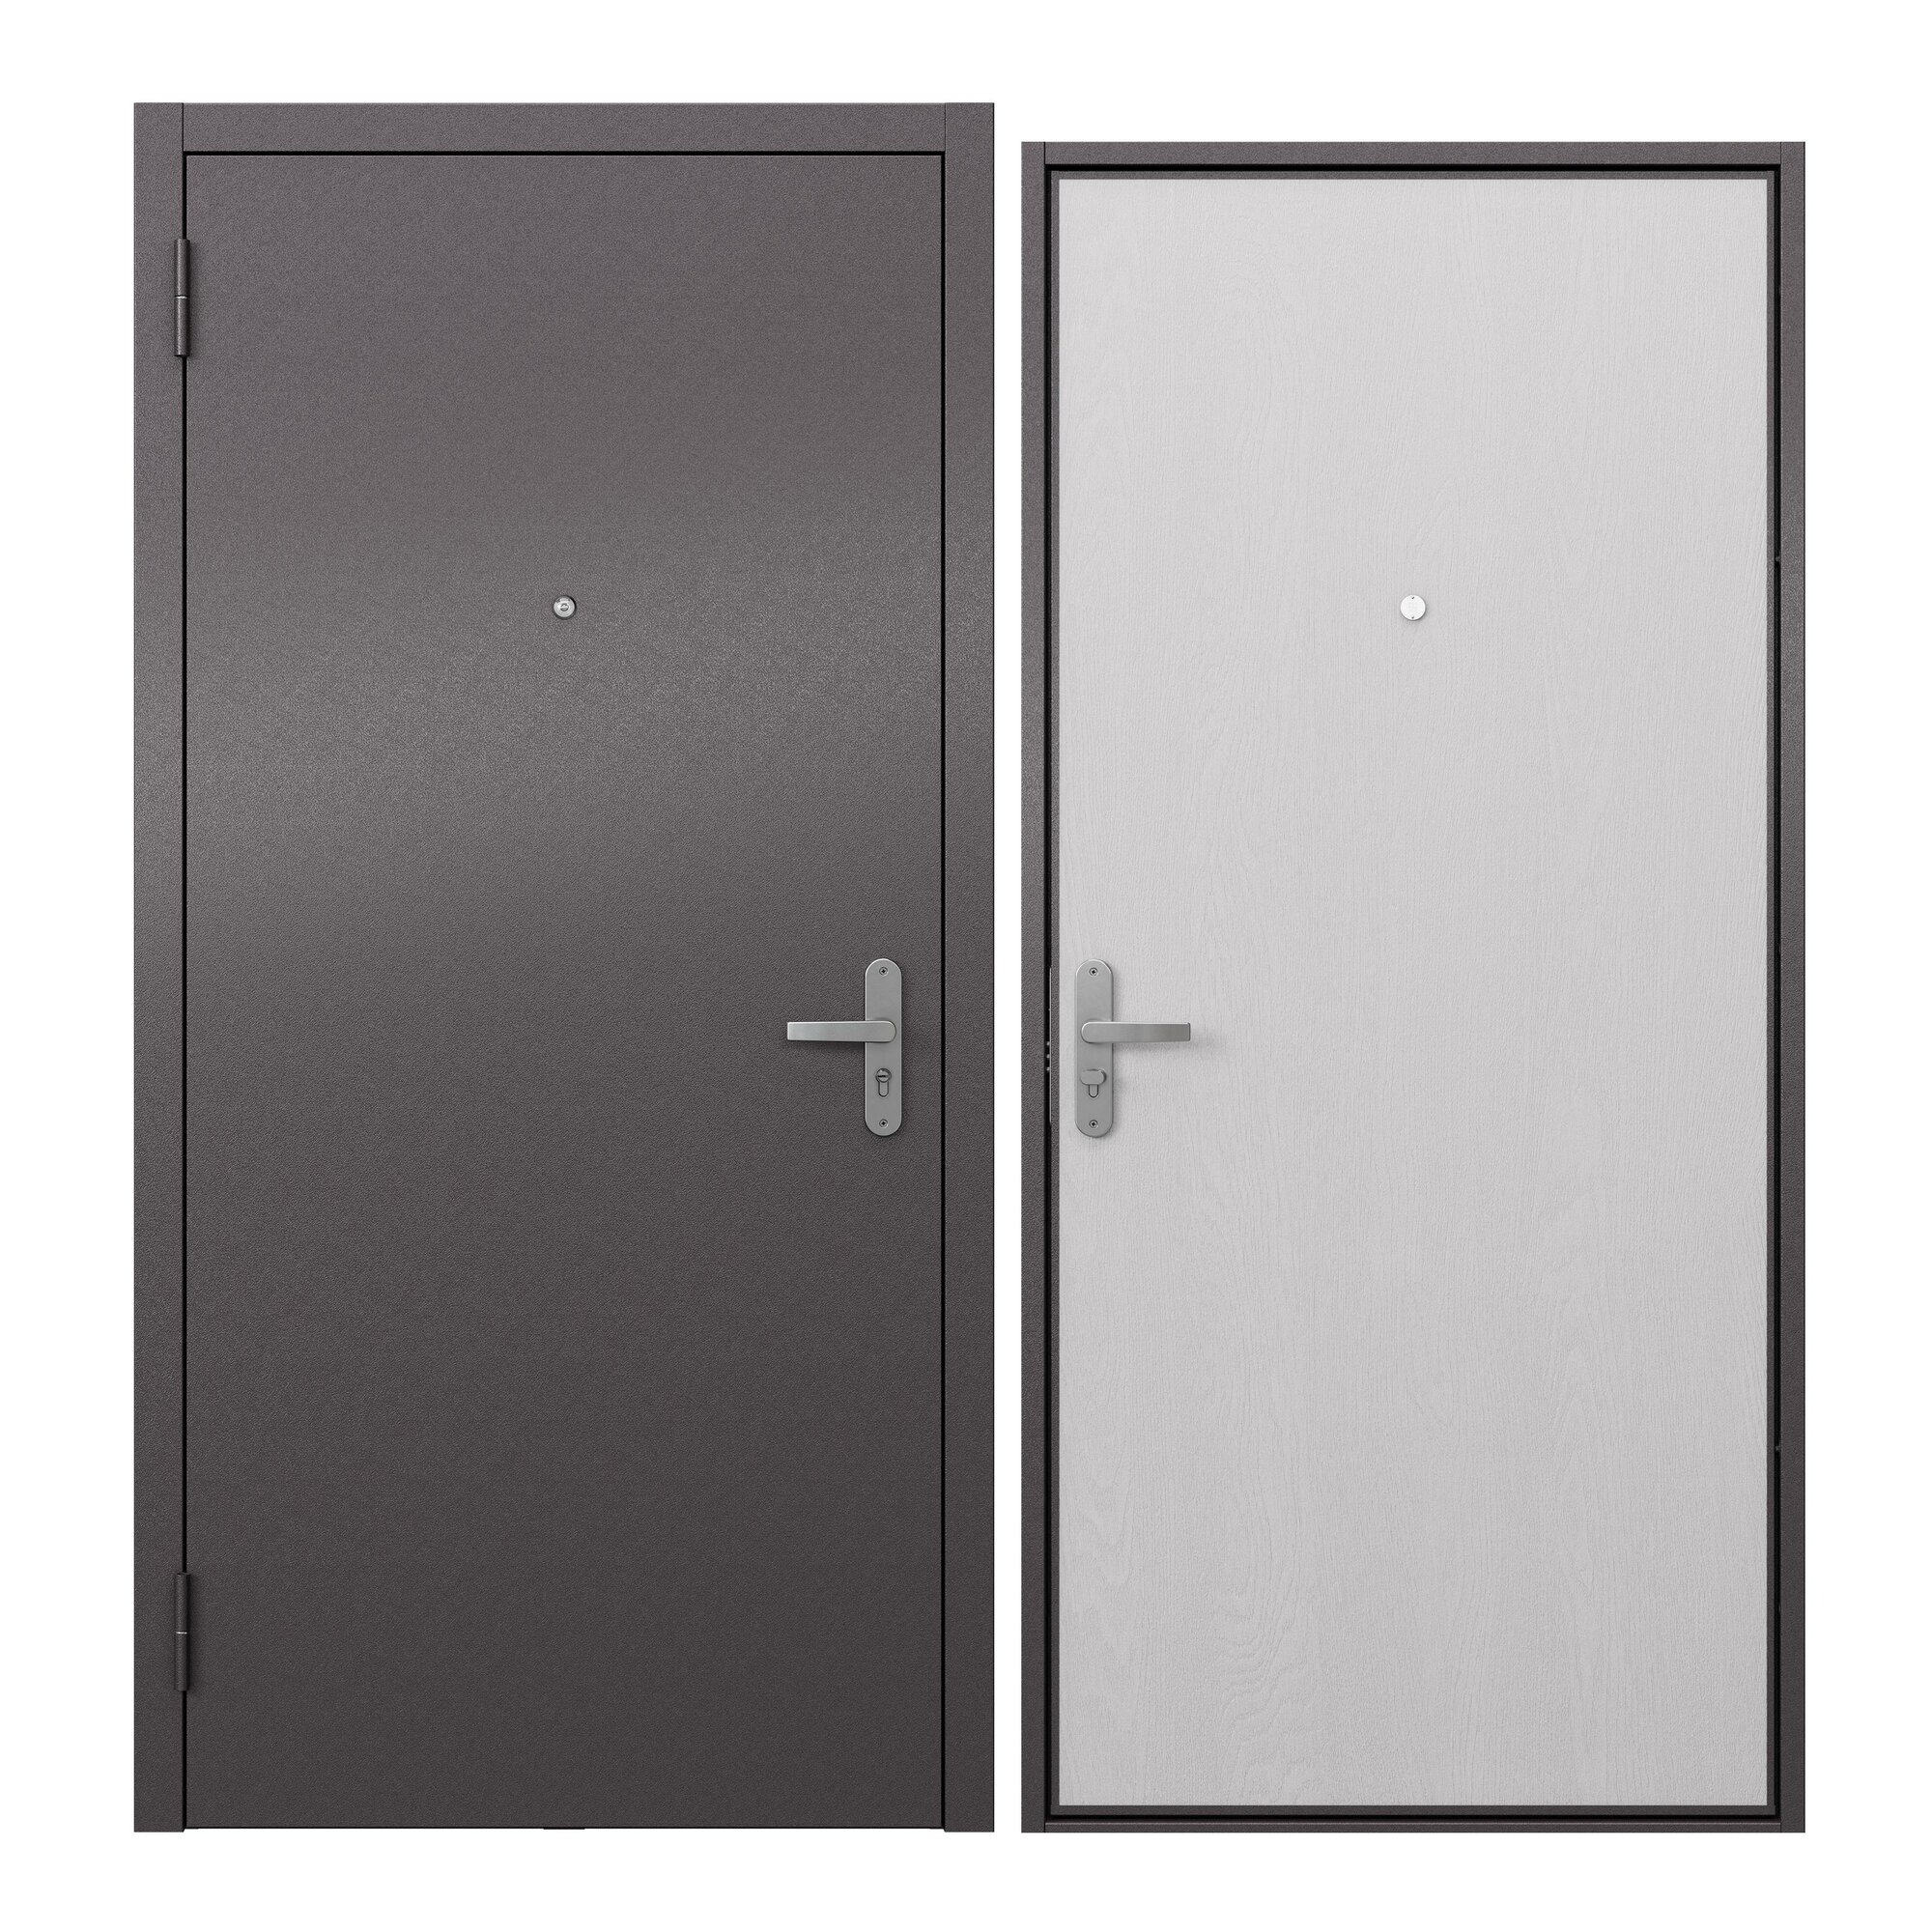 Дверь входная металлическая Proline для квартиры Terminal A 960х2050 левая, антивандальное покрытие, уплотнитель, цилиндровый замок 2-го класса